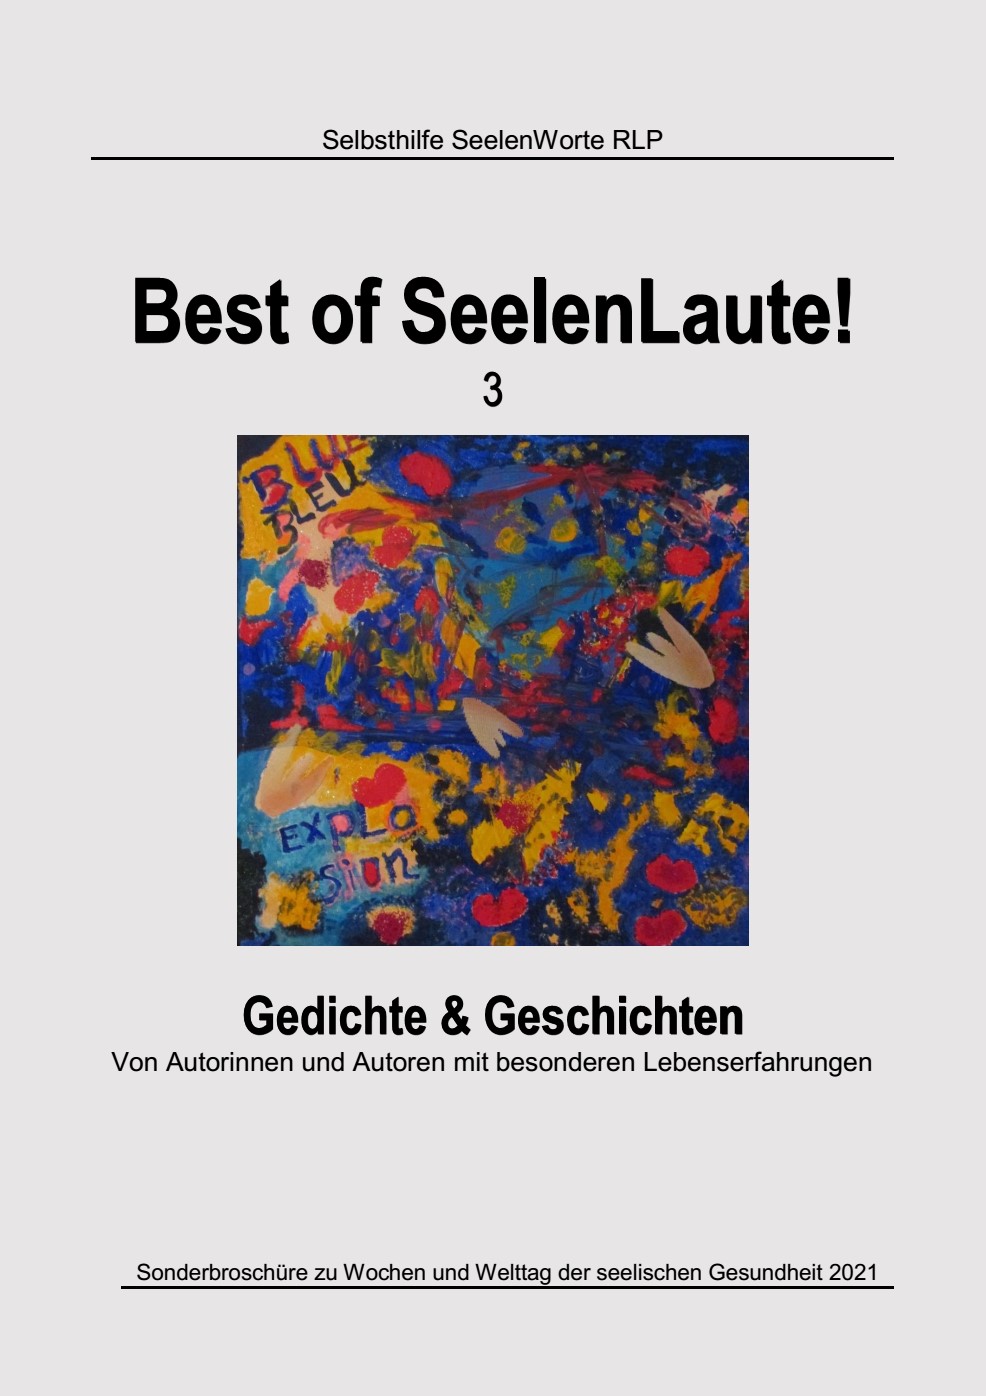 Best of SeelenLaute! 3 erschienen